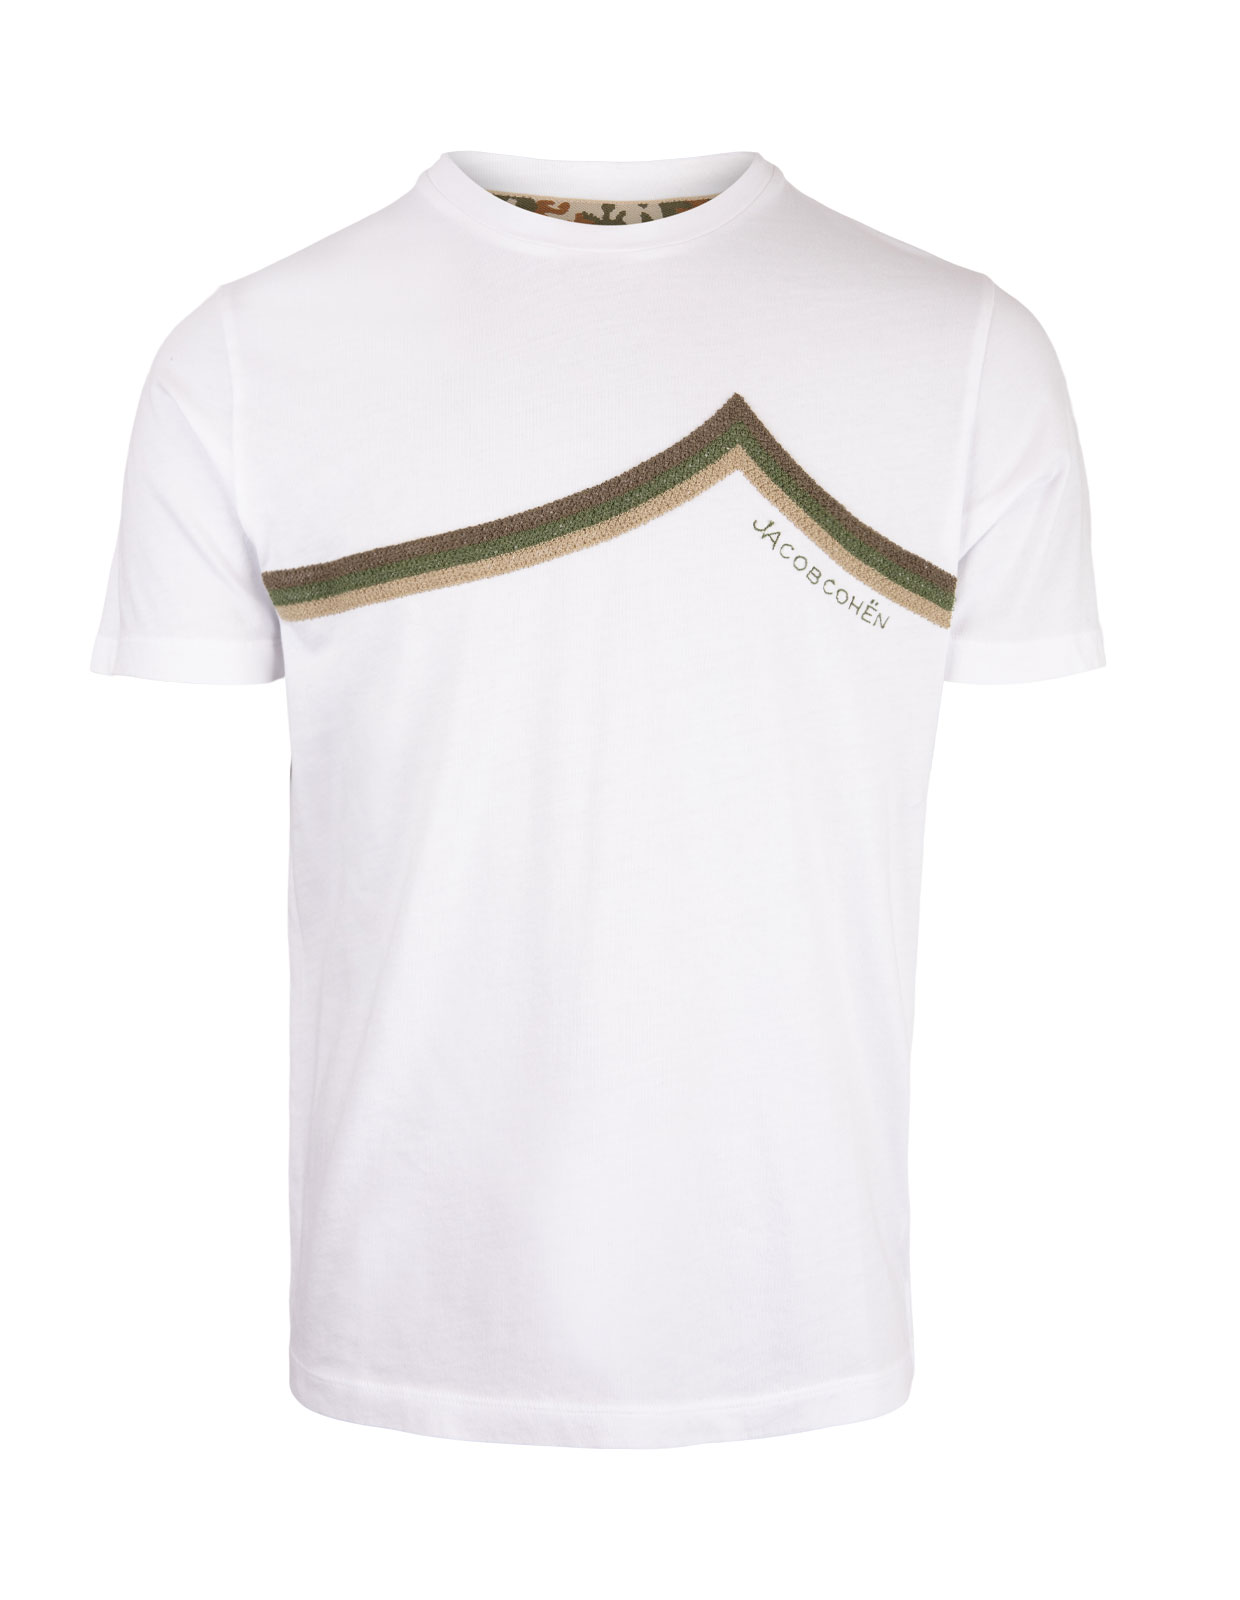 T-Shirt White Stl XL